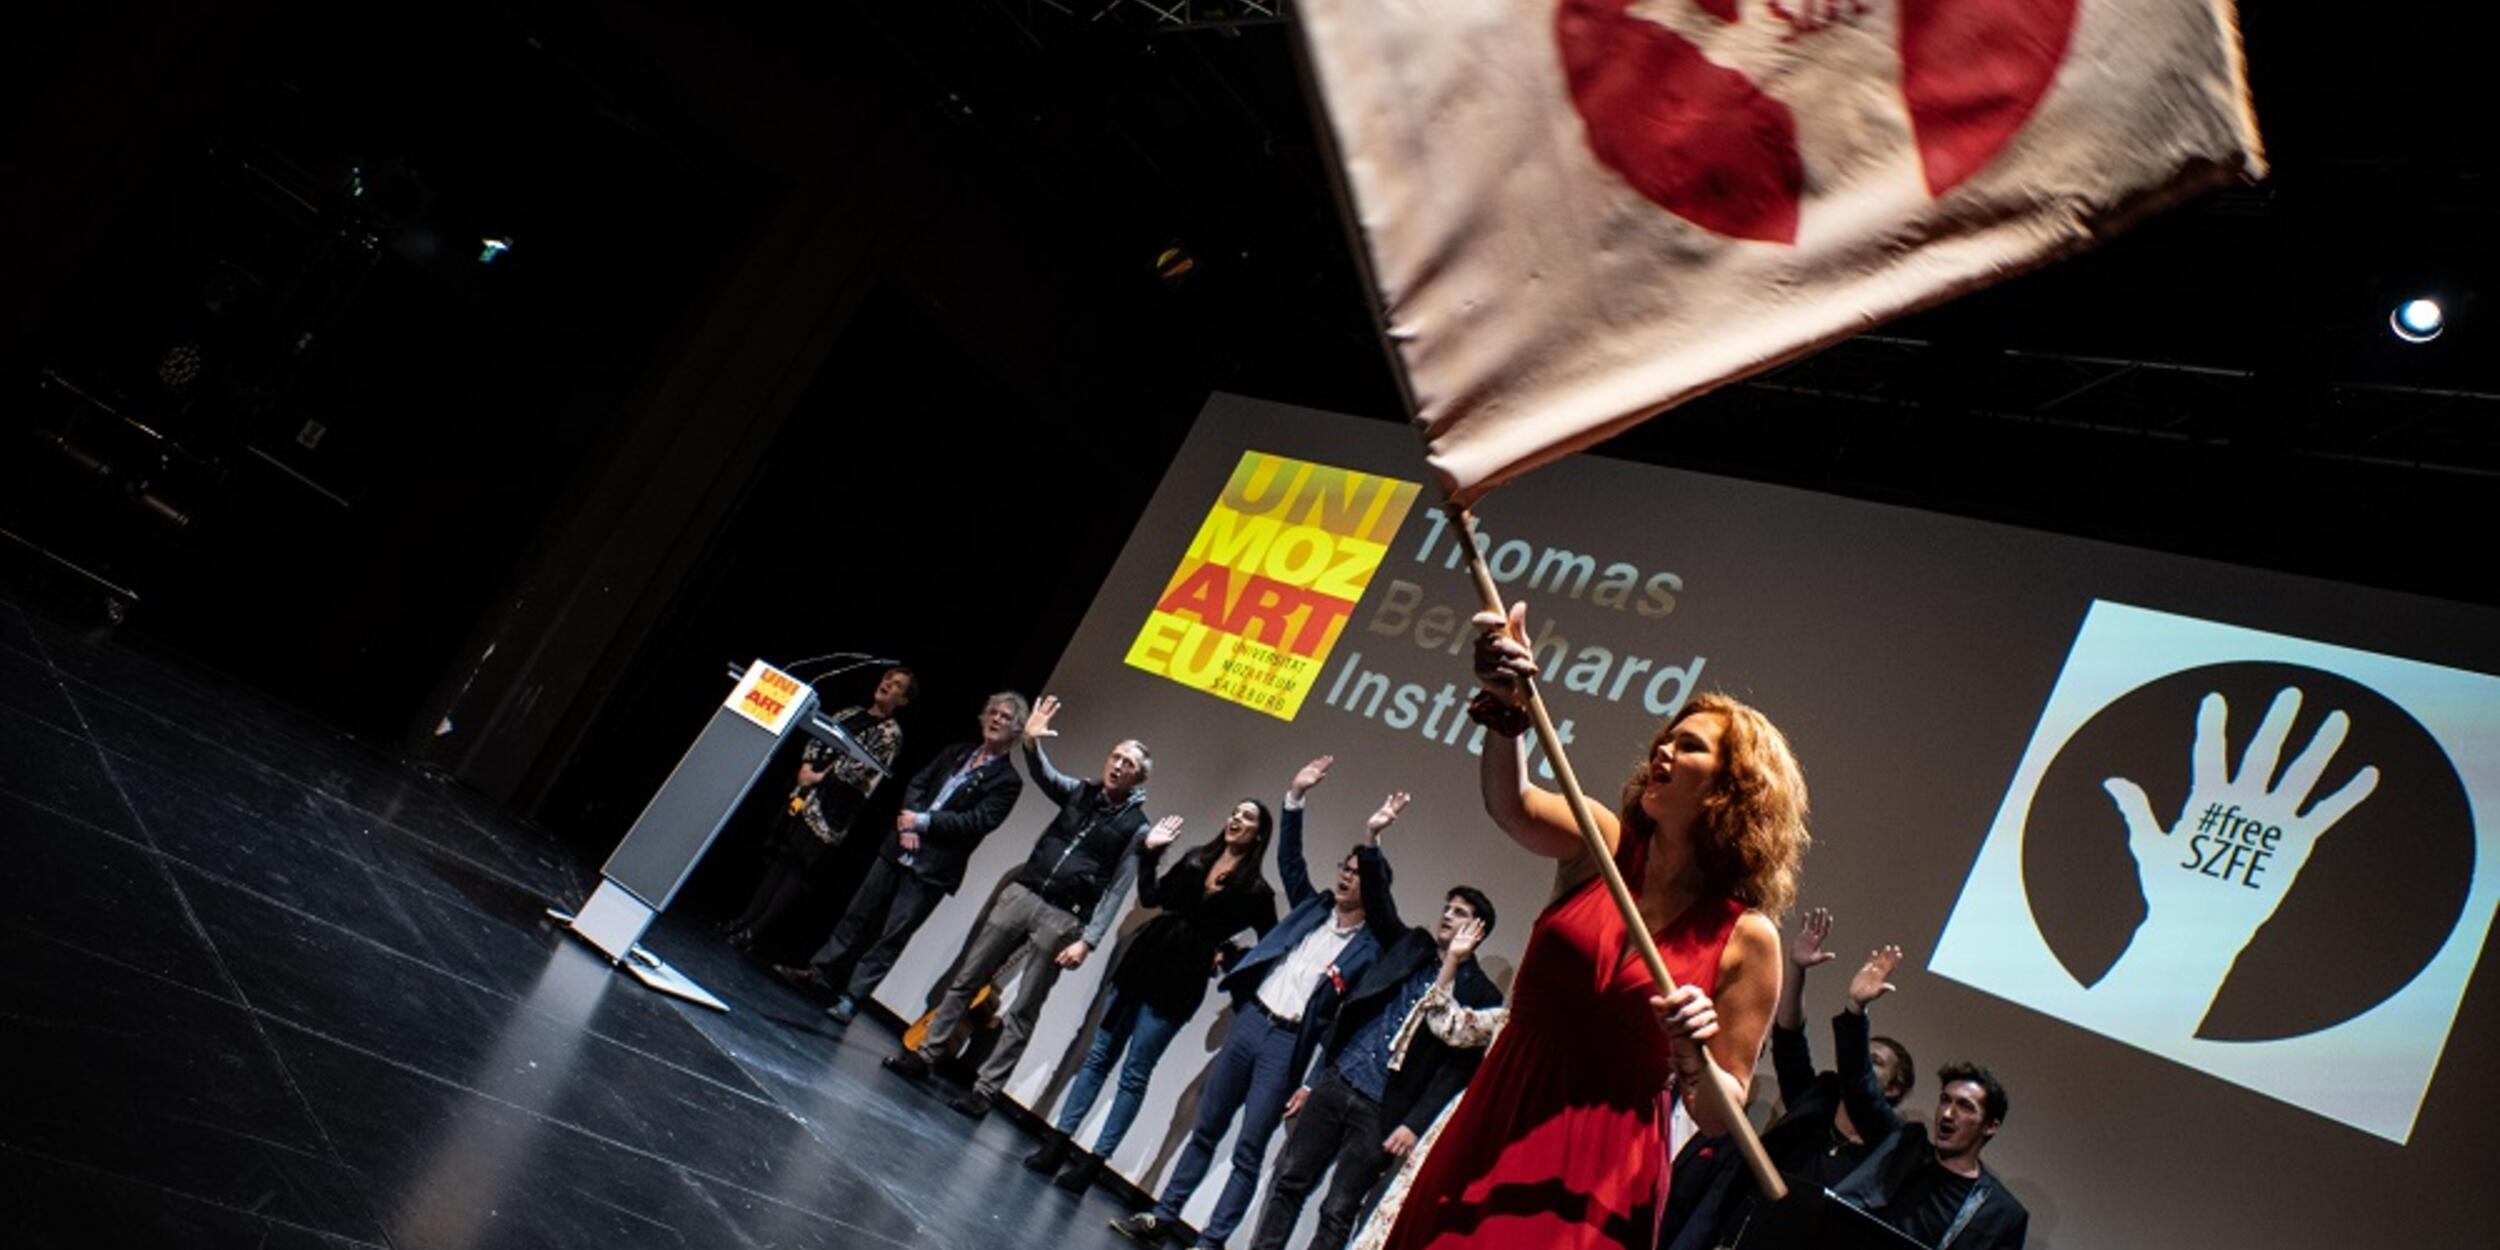 Menschen auf der Bühne, eine Frau in rotem Kleid schwingt eine Fahne mit Aufschrift "Free SZFE" | © Fabian Schober